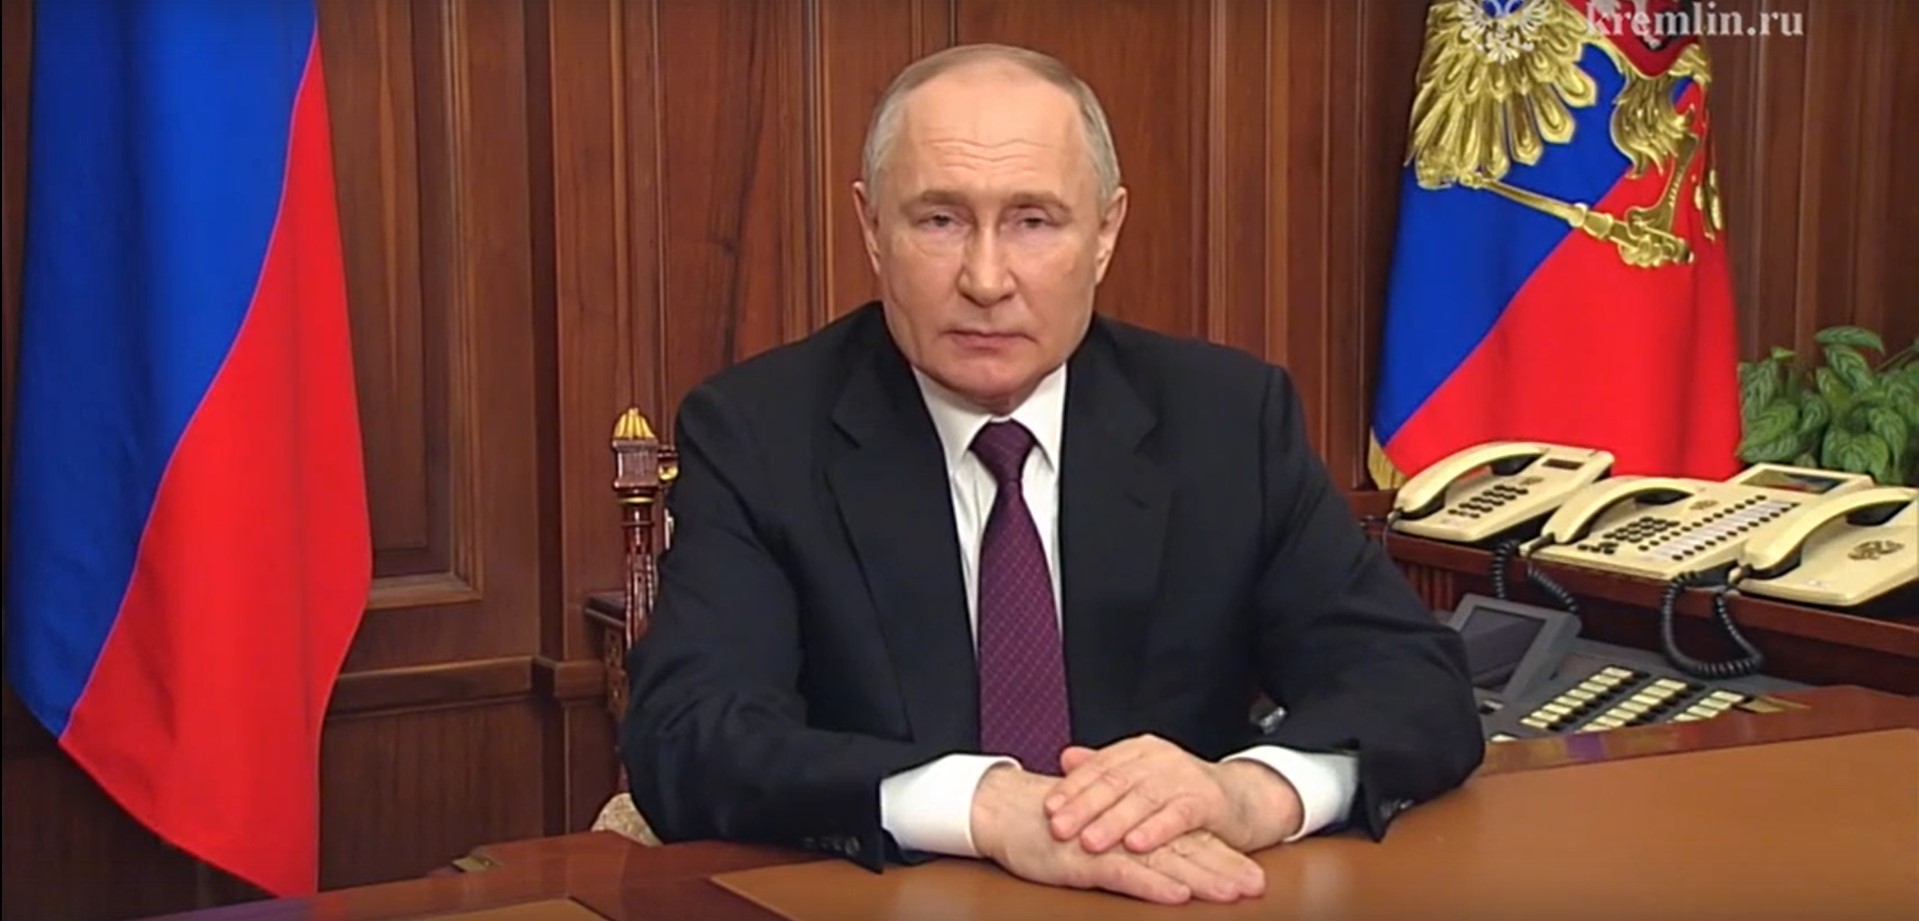 Владимир Путин обратился к гражданам по итогам выборов Президента России